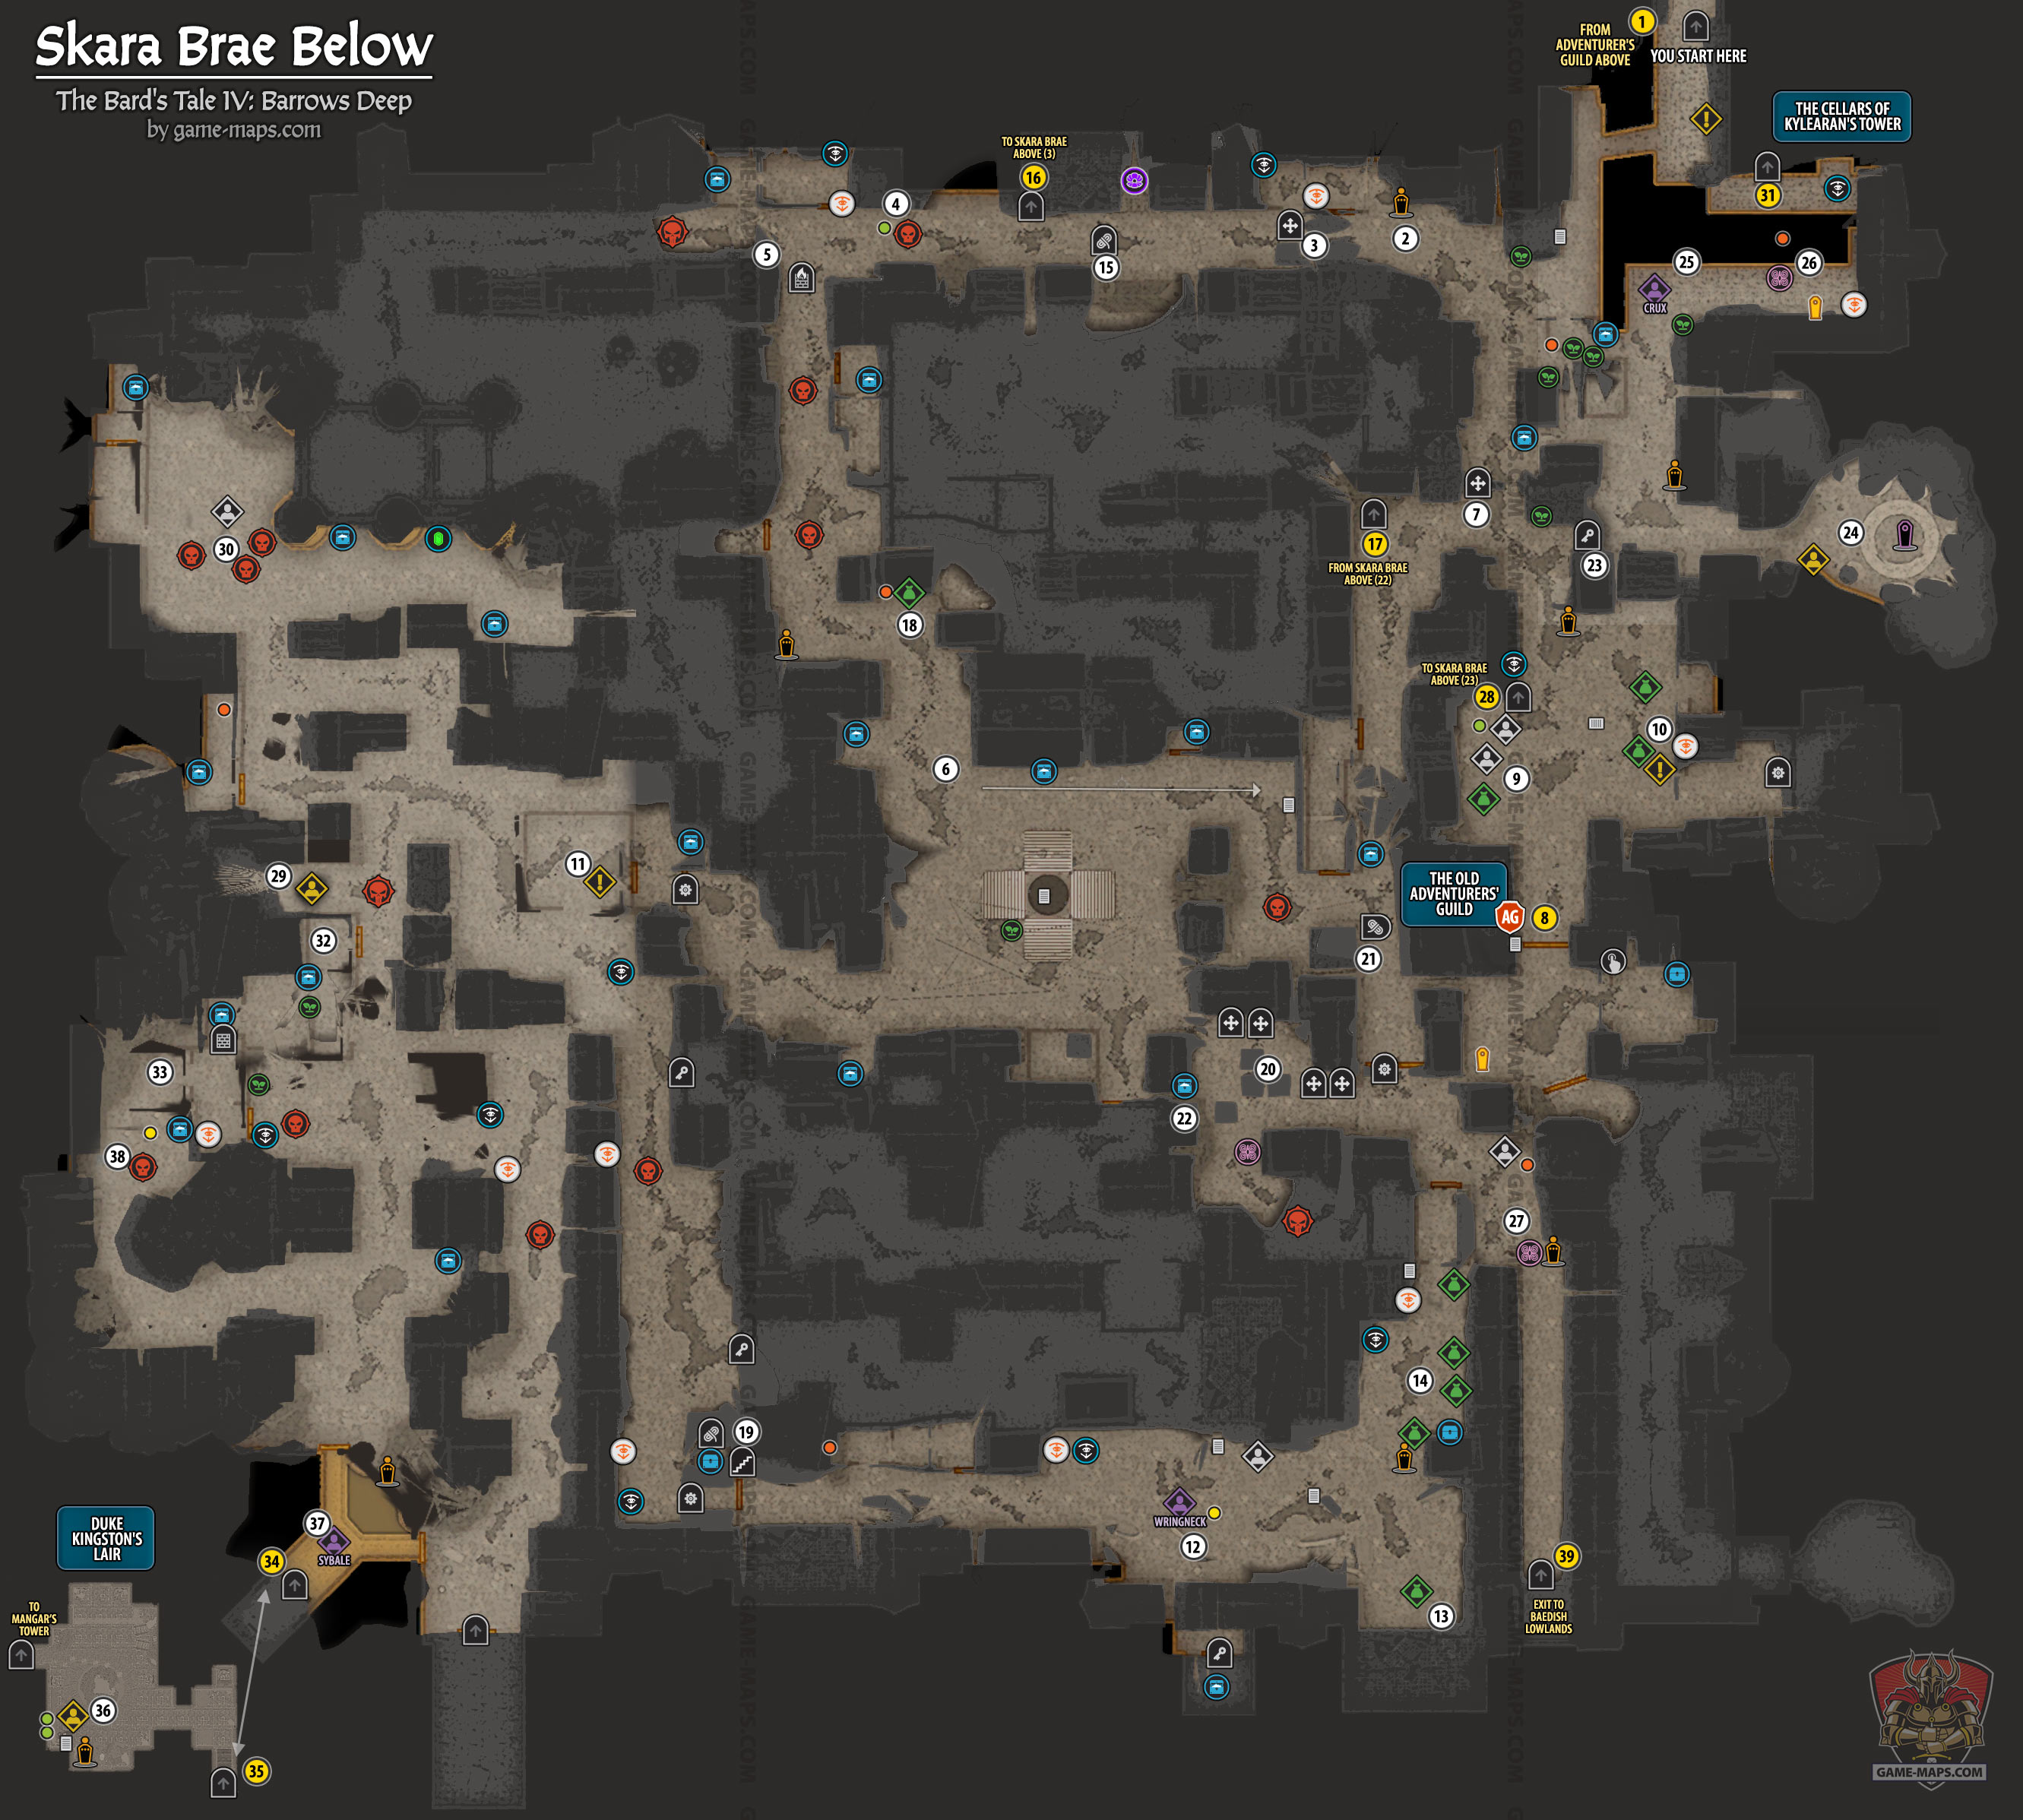 Skara Brae Below Map